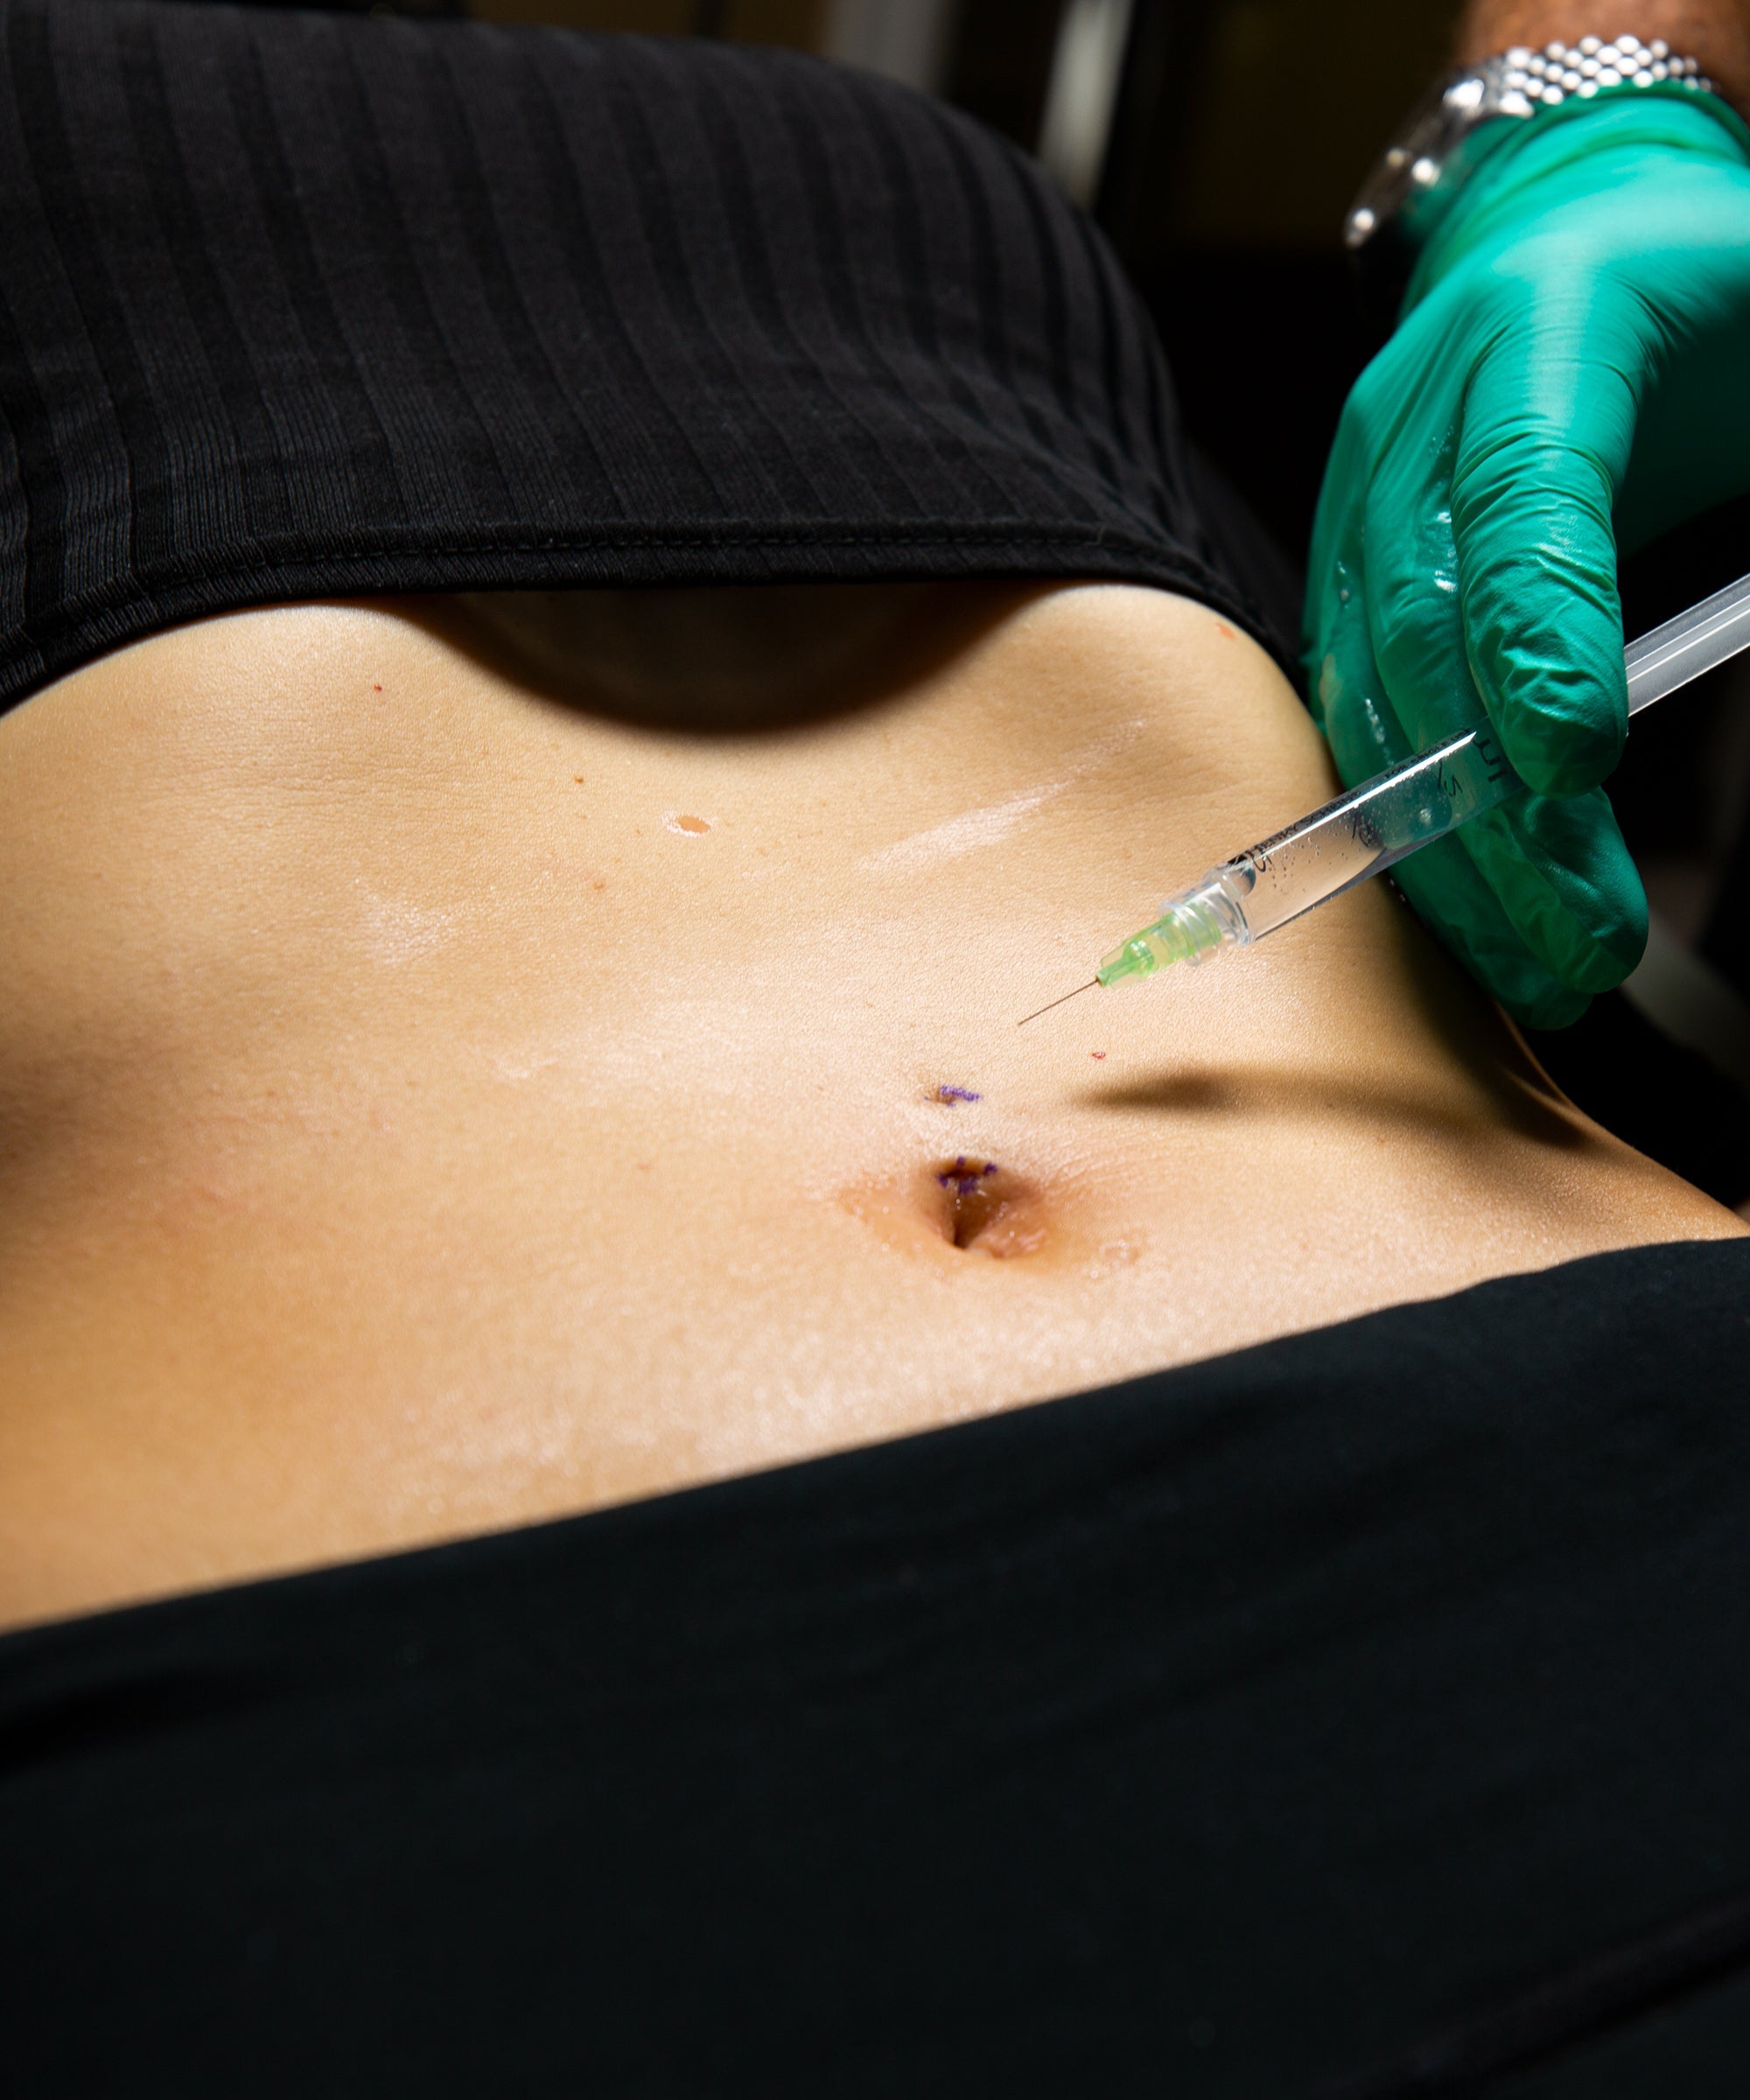 Vidéo chirurgie d'ablation d'un piercing au nombril